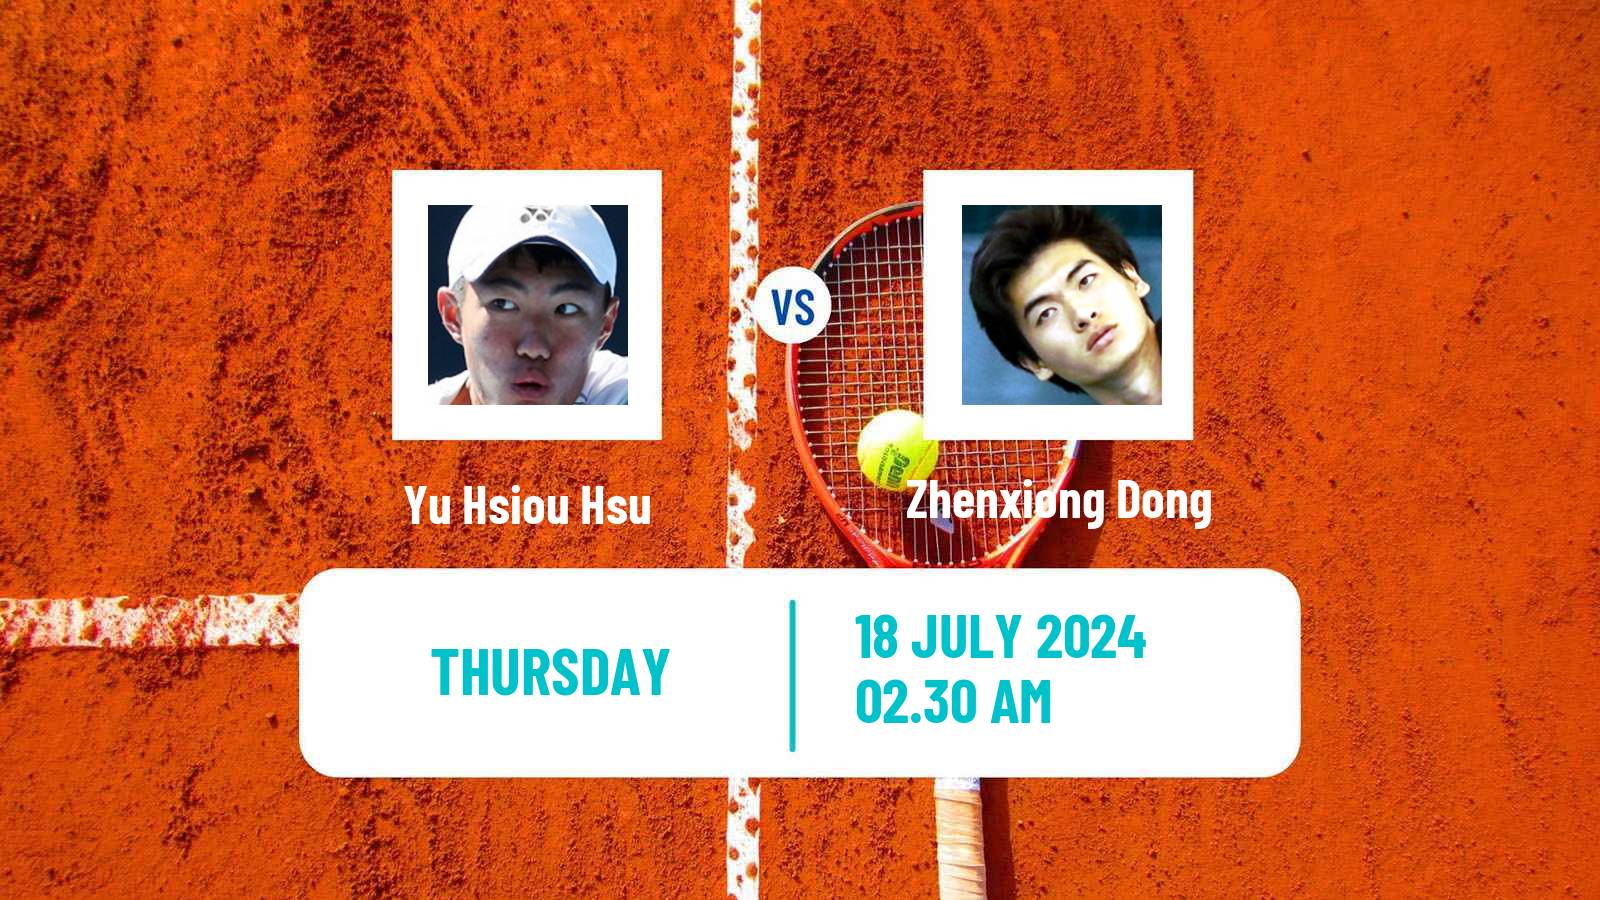 Tennis ITF M25 Tianjin 2 Men Yu Hsiou Hsu - Zhenxiong Dong